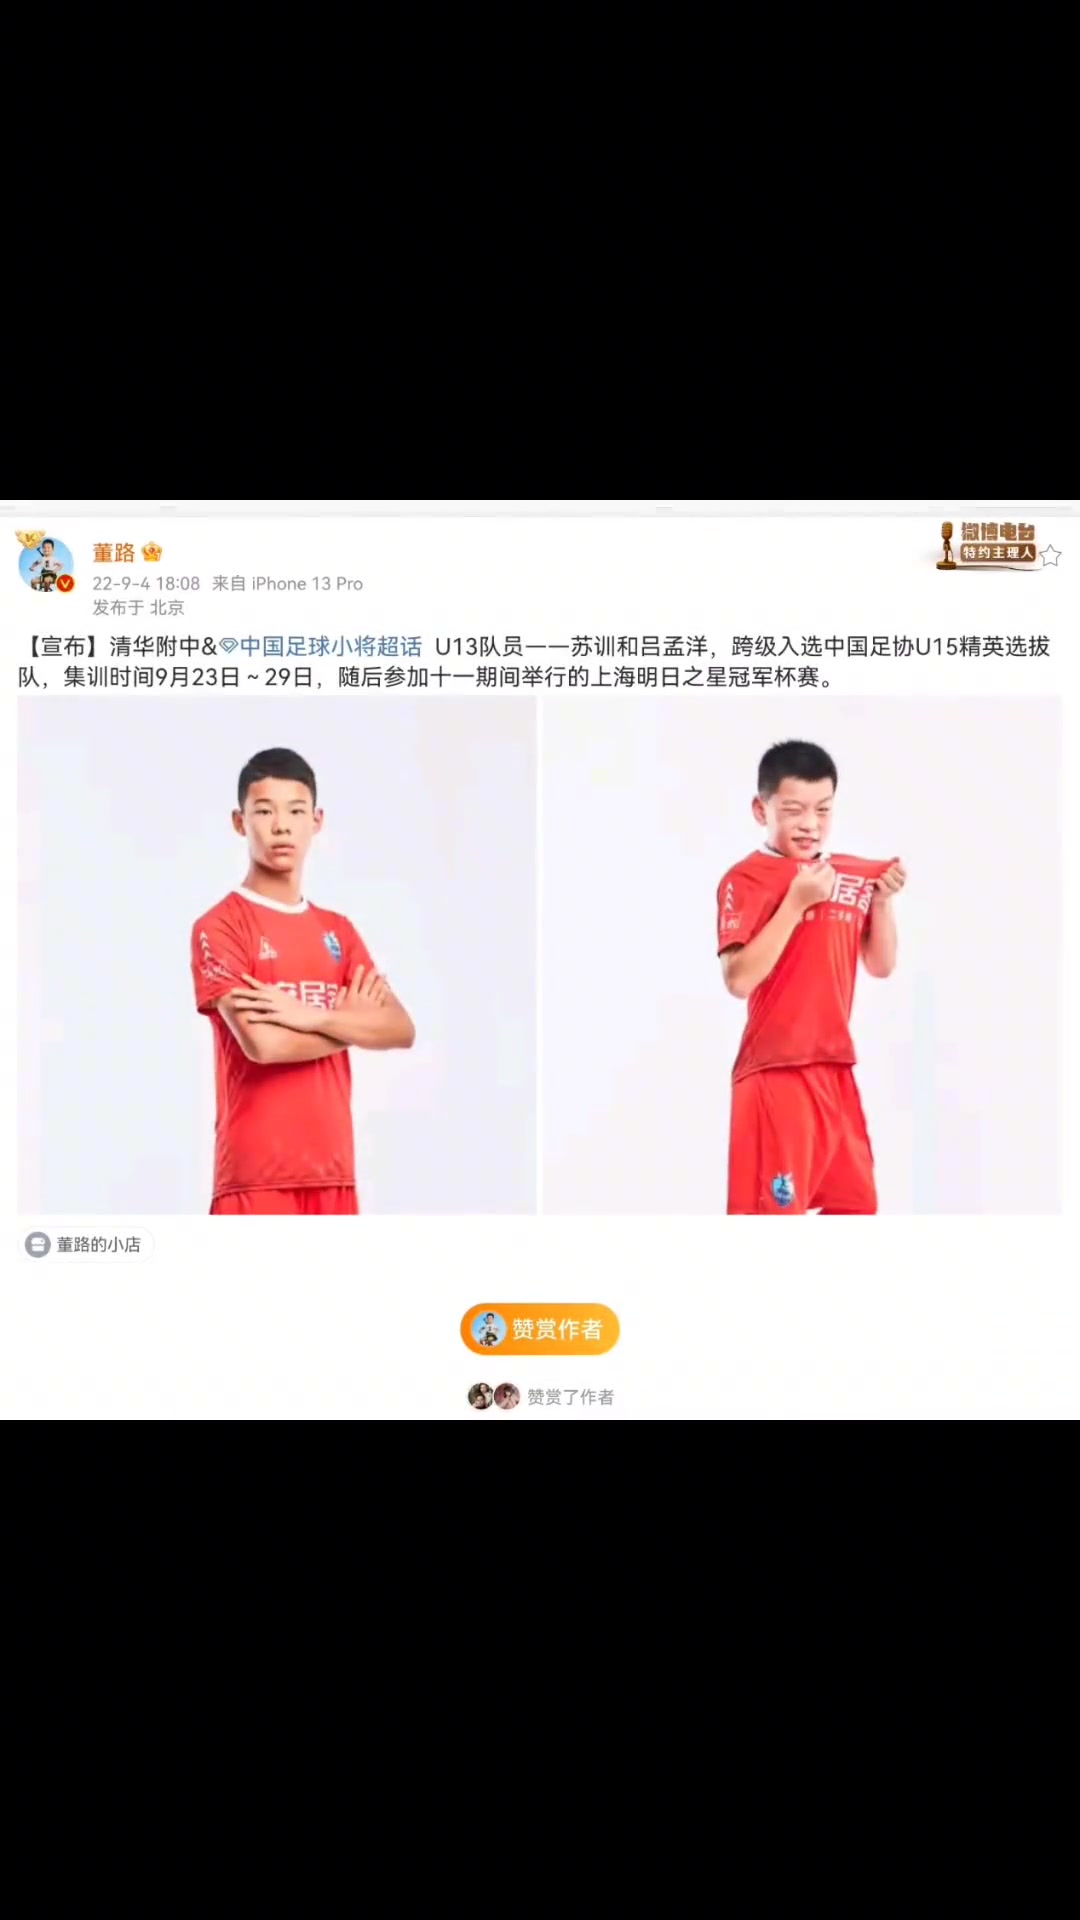 中国足球小将队员 苏训和吕孟洋 跨级入选国家队